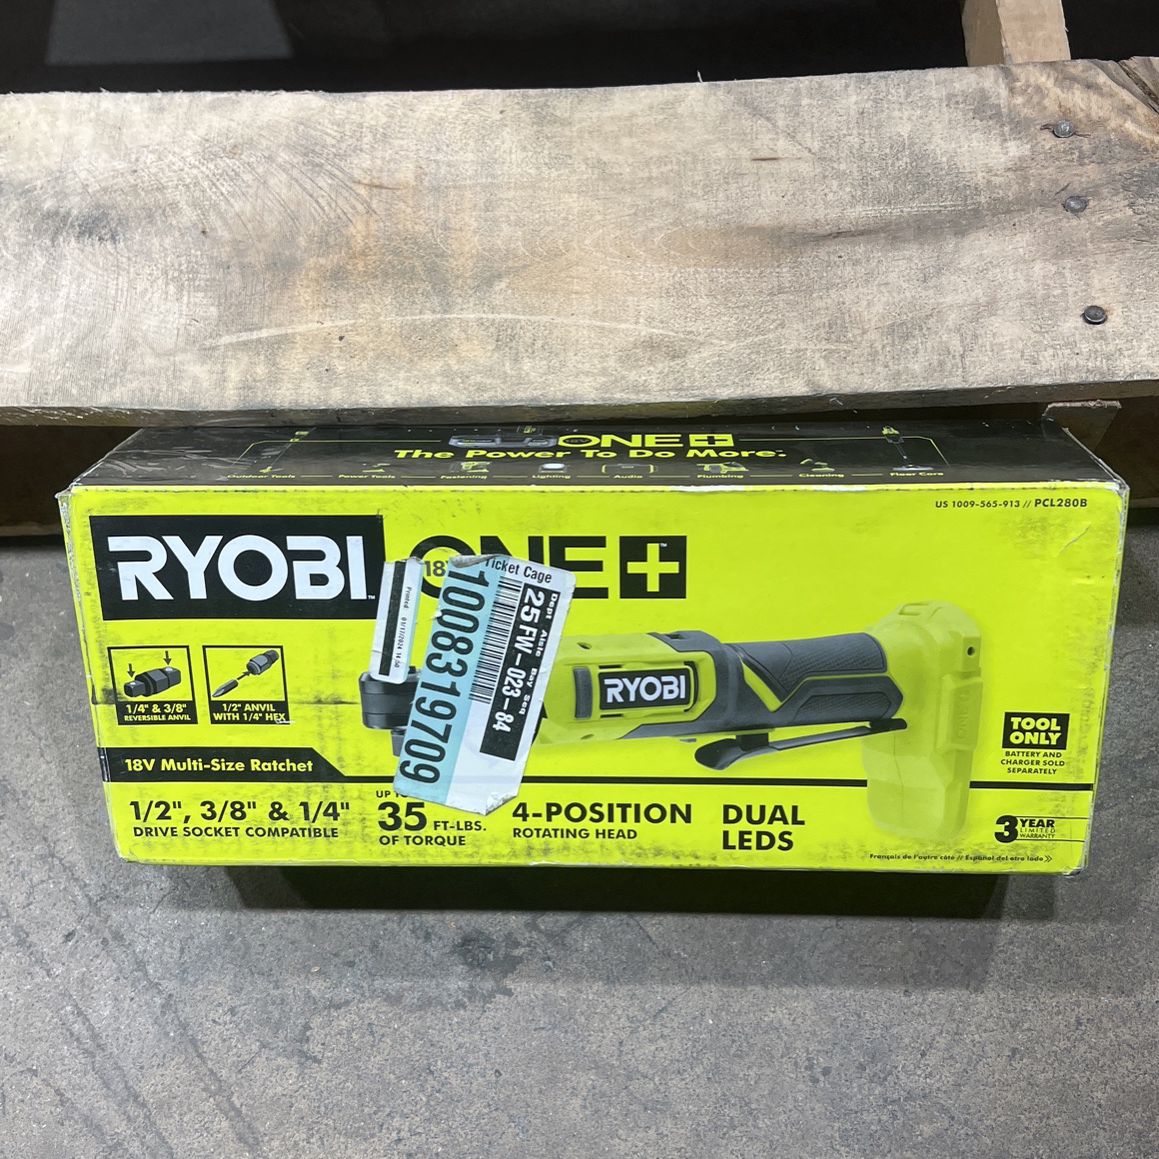 Ryobi 18v Multi- size ratchet